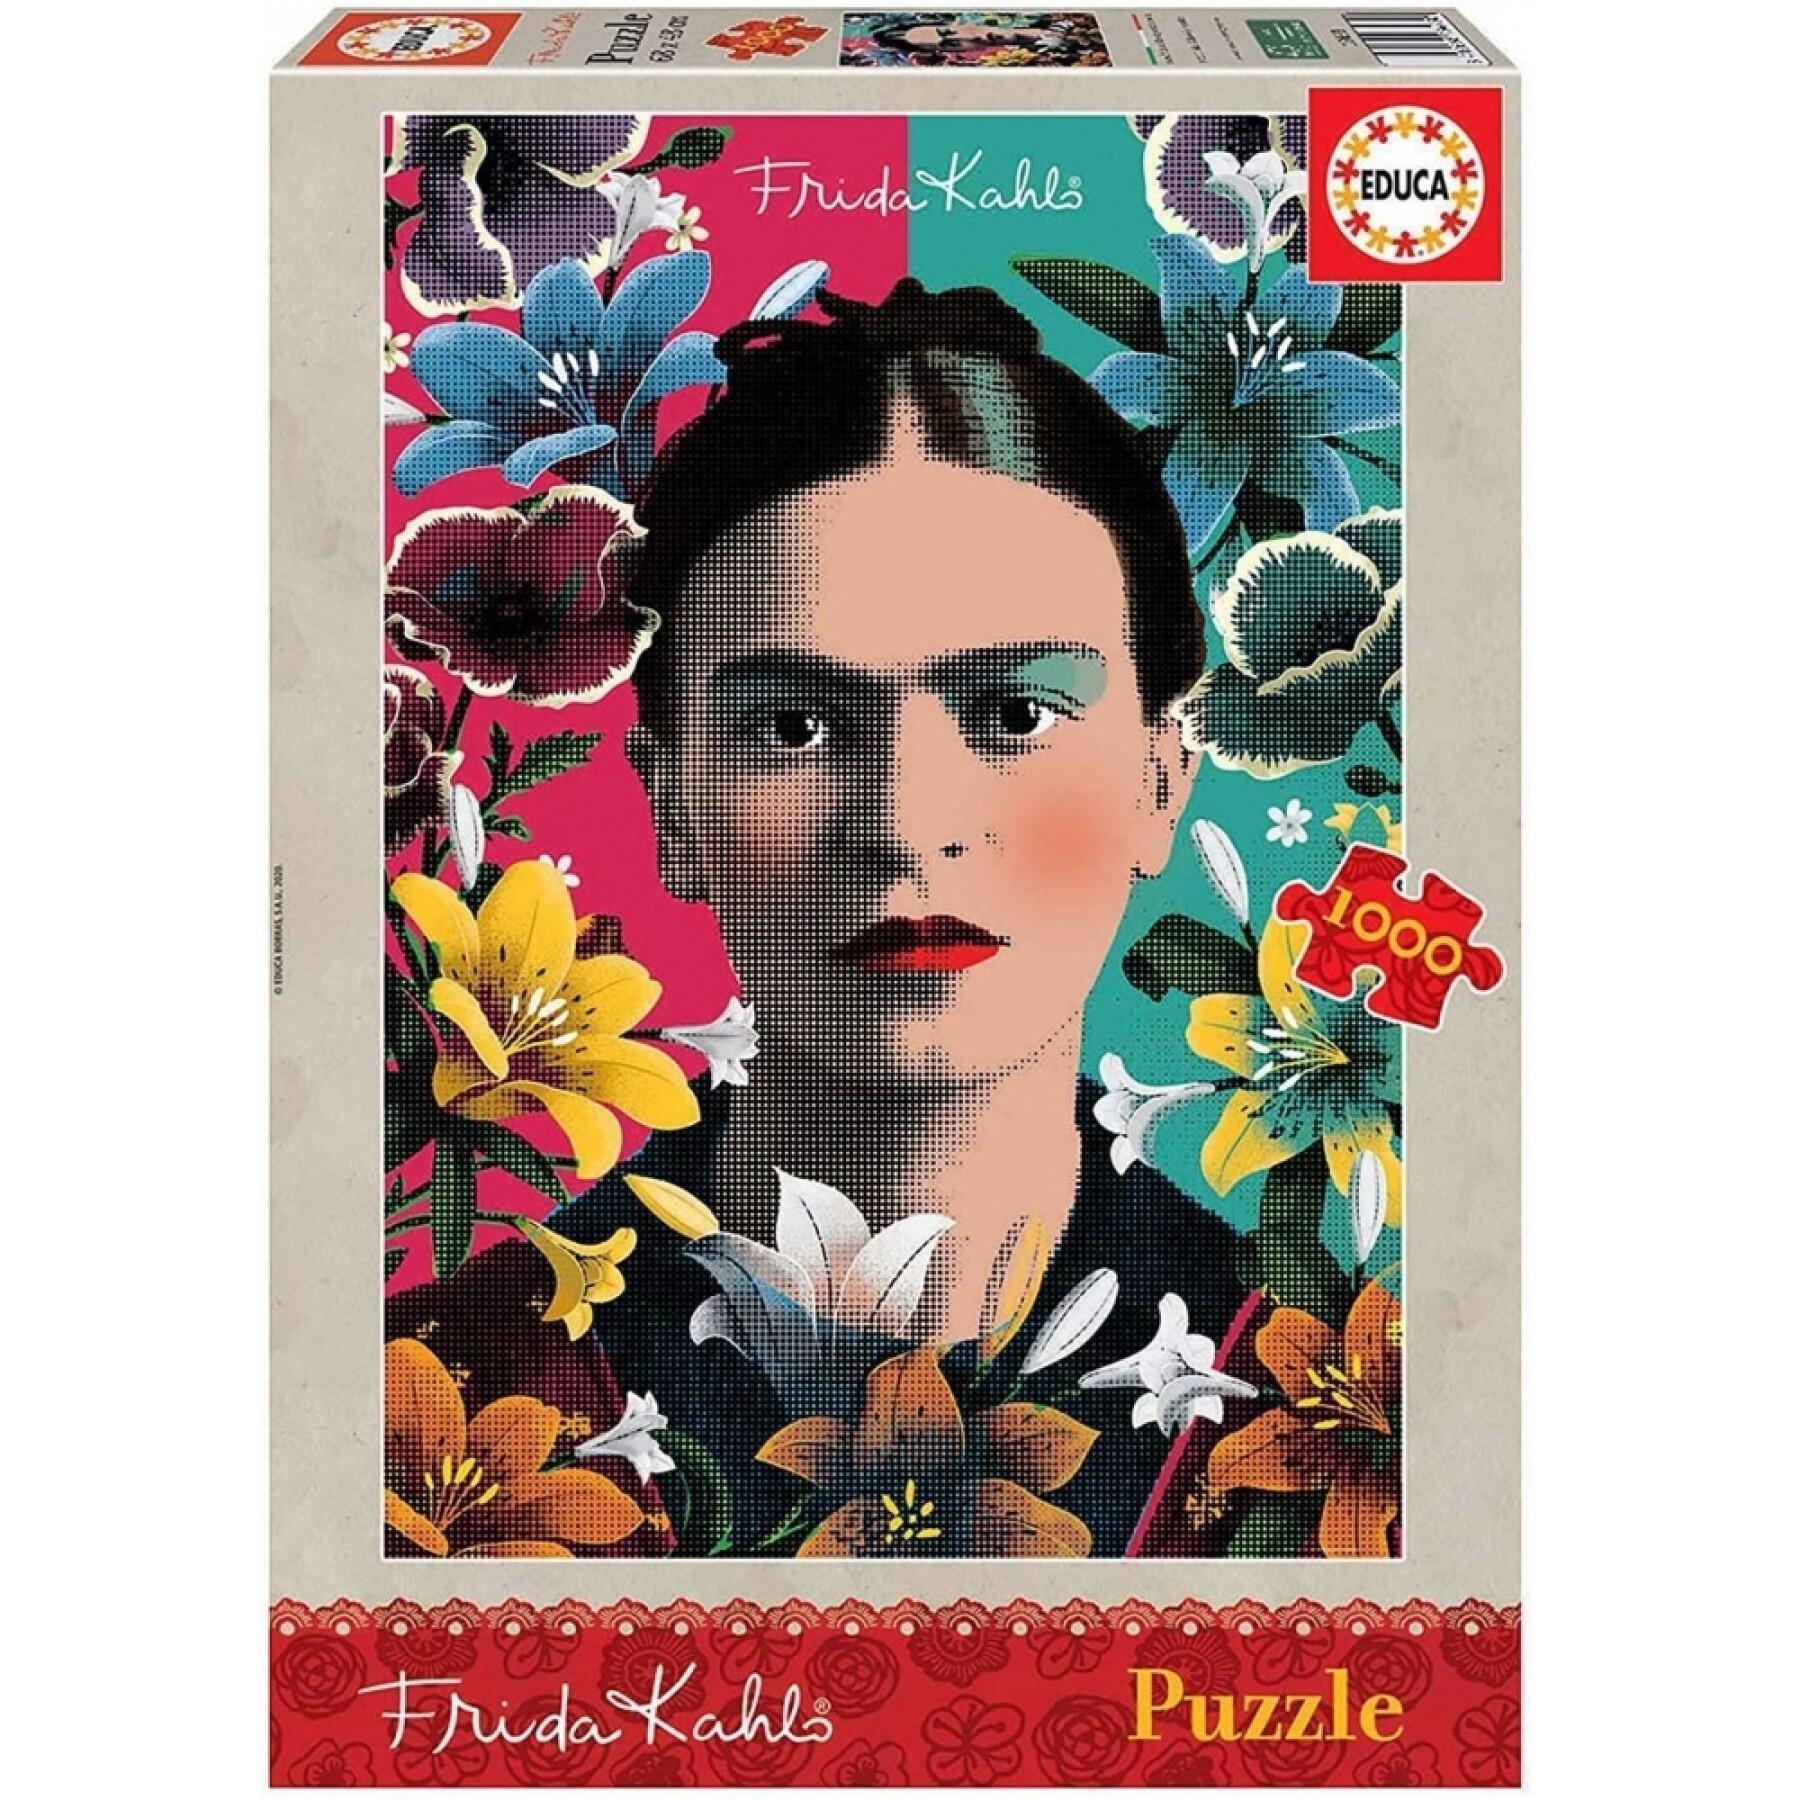 Puzzle de 1000 peças Educa Frida Kahlo